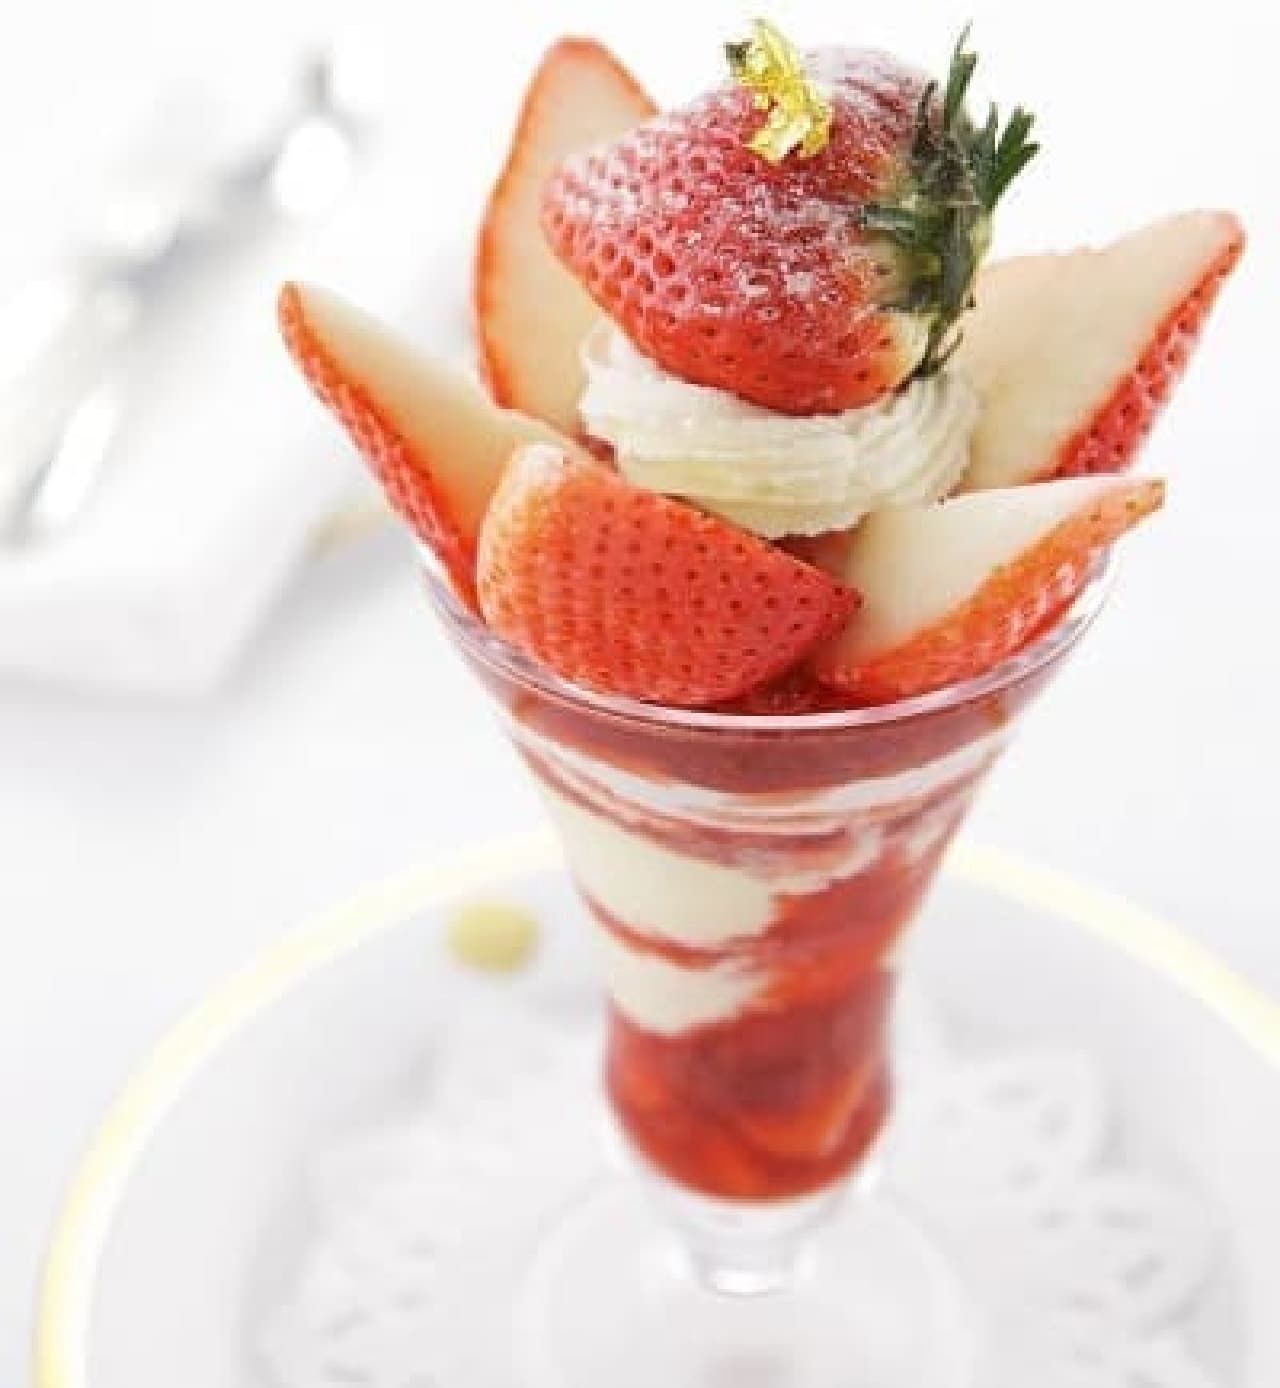 Premium strawberry parfait of Mino daughter from Ibi-gun, Gifu prefecture